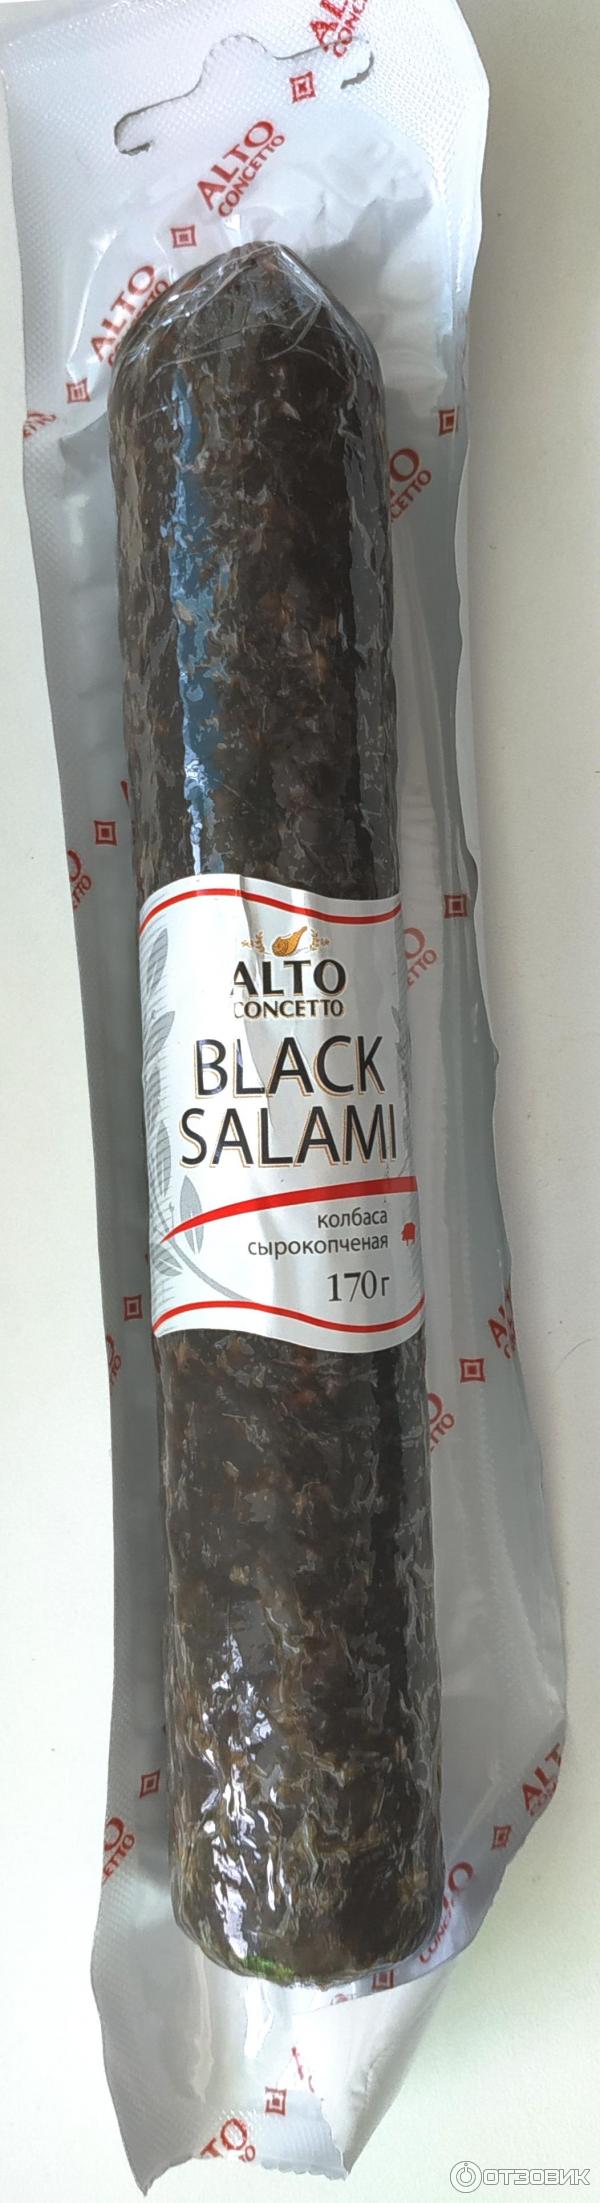 Black Salmi